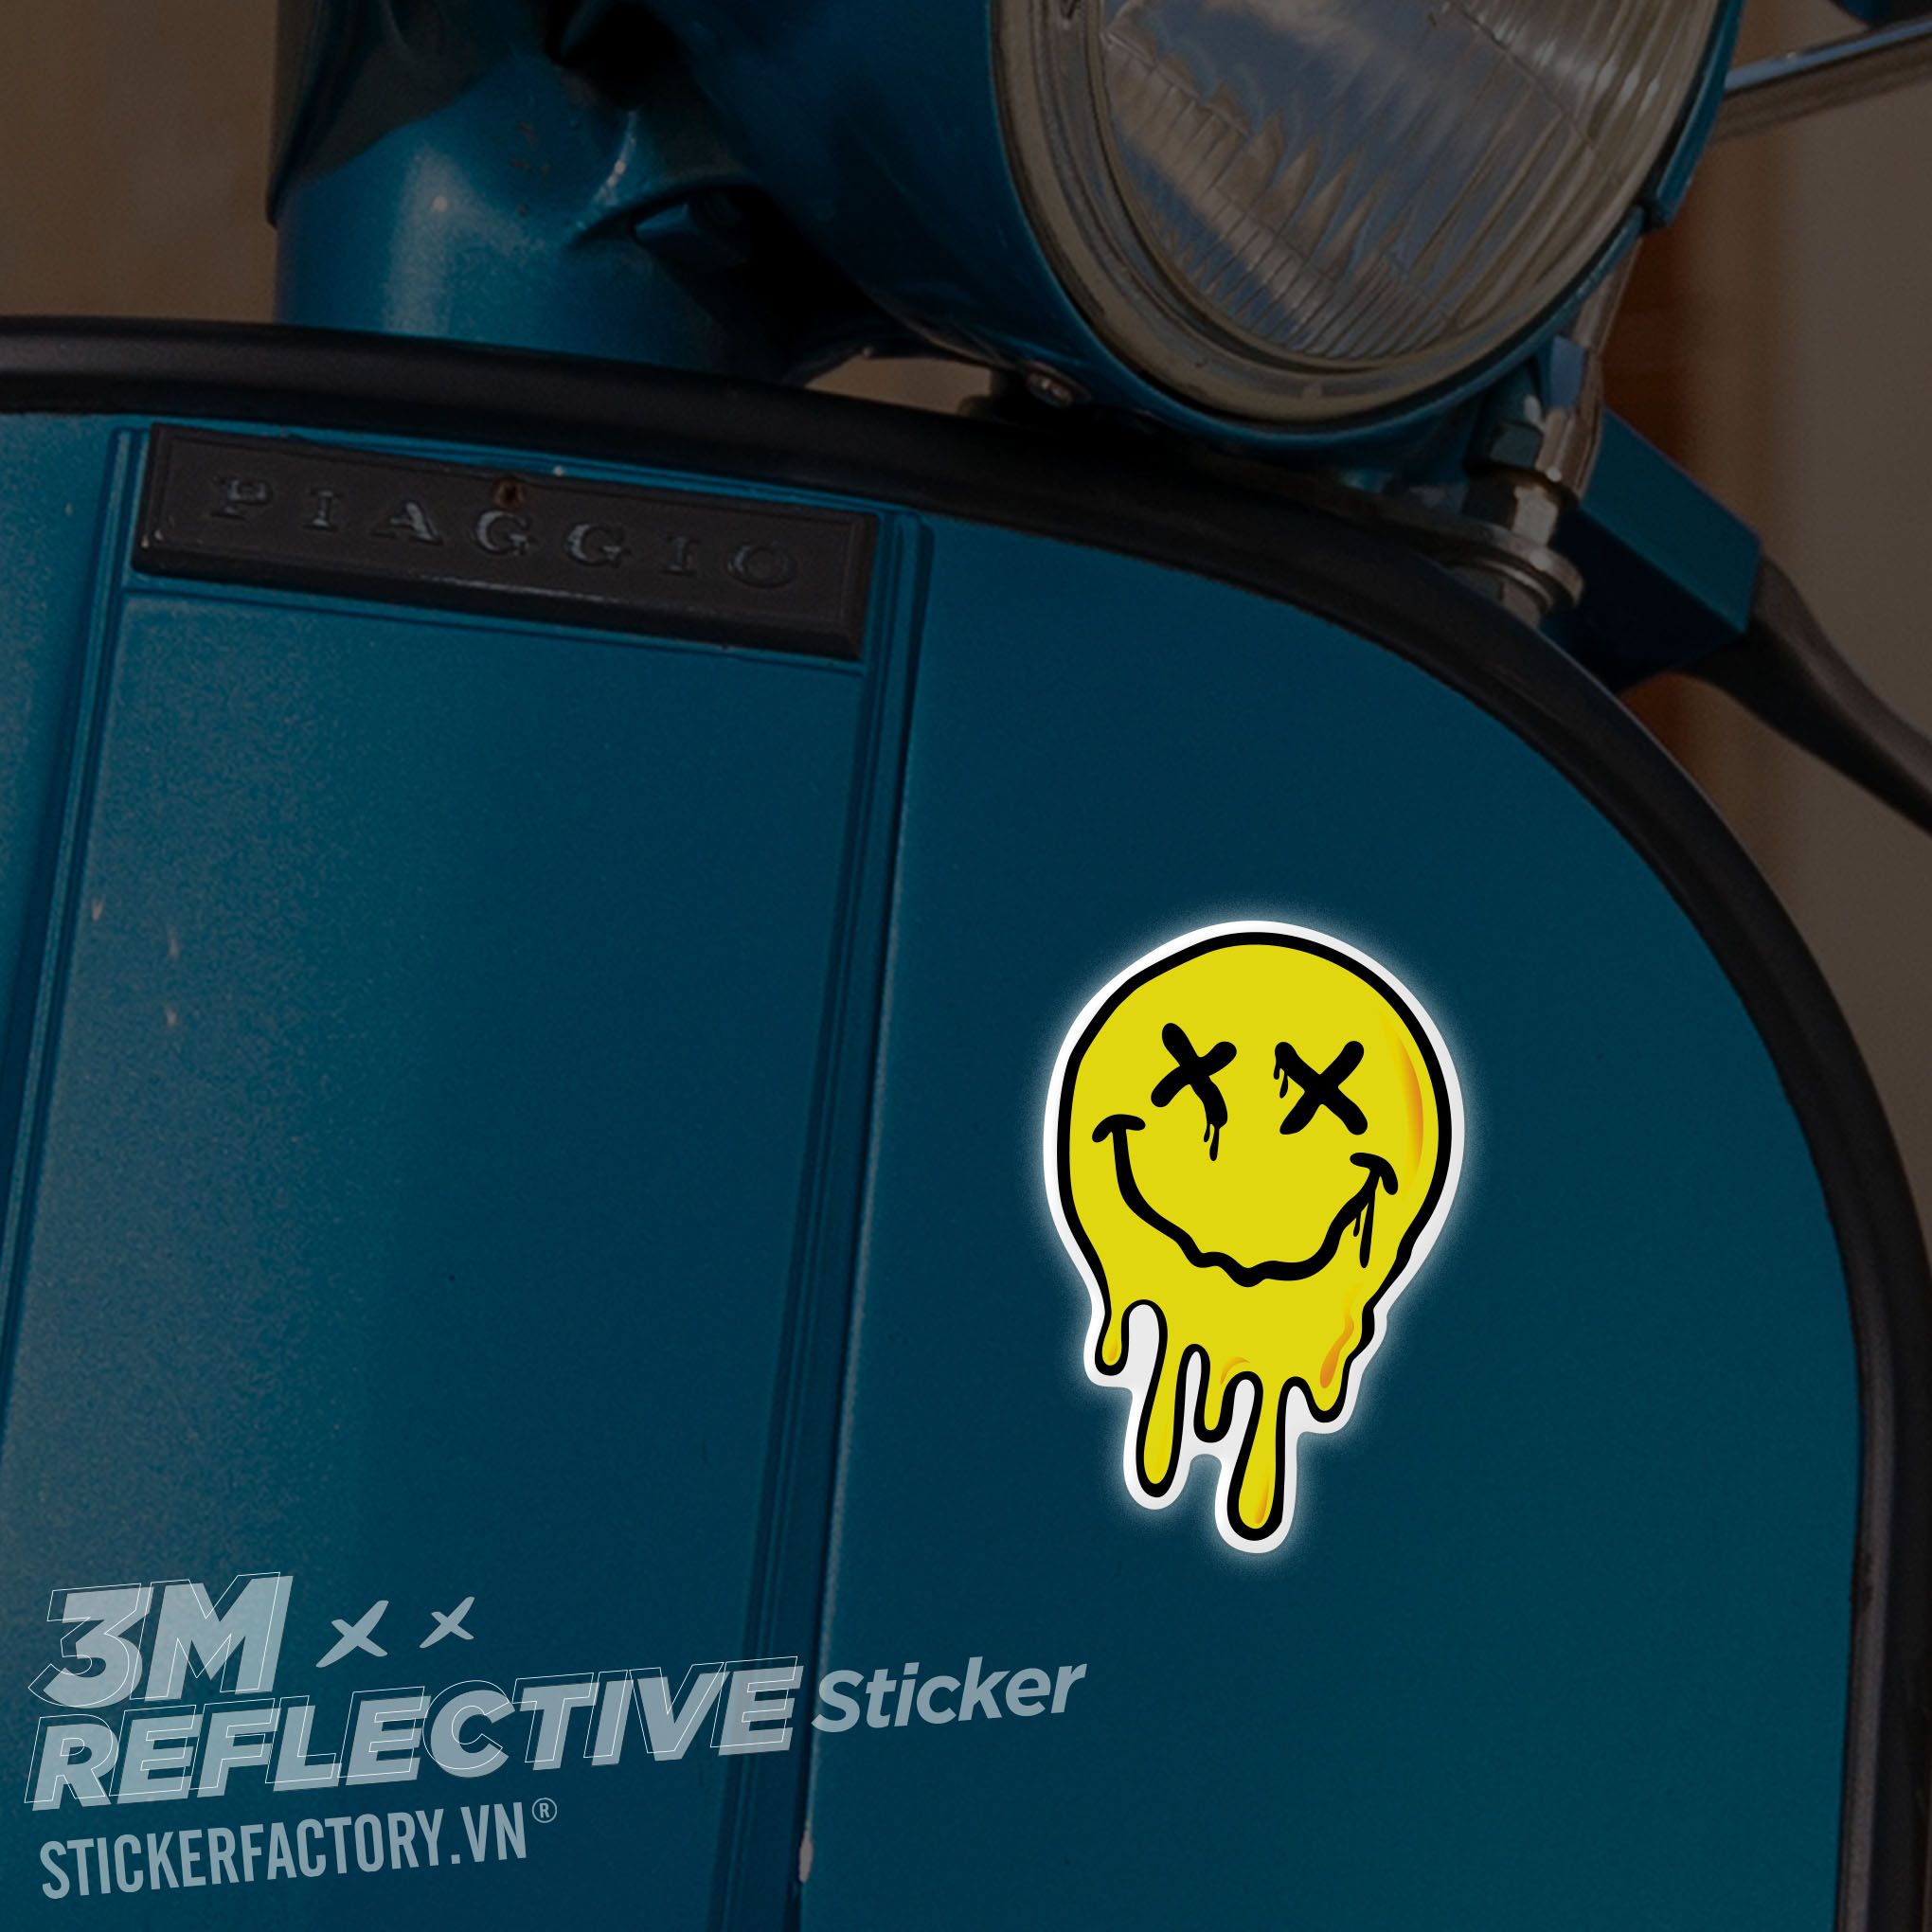 MELTING SMILE XX 3M - Reflective Sticker Die-cut